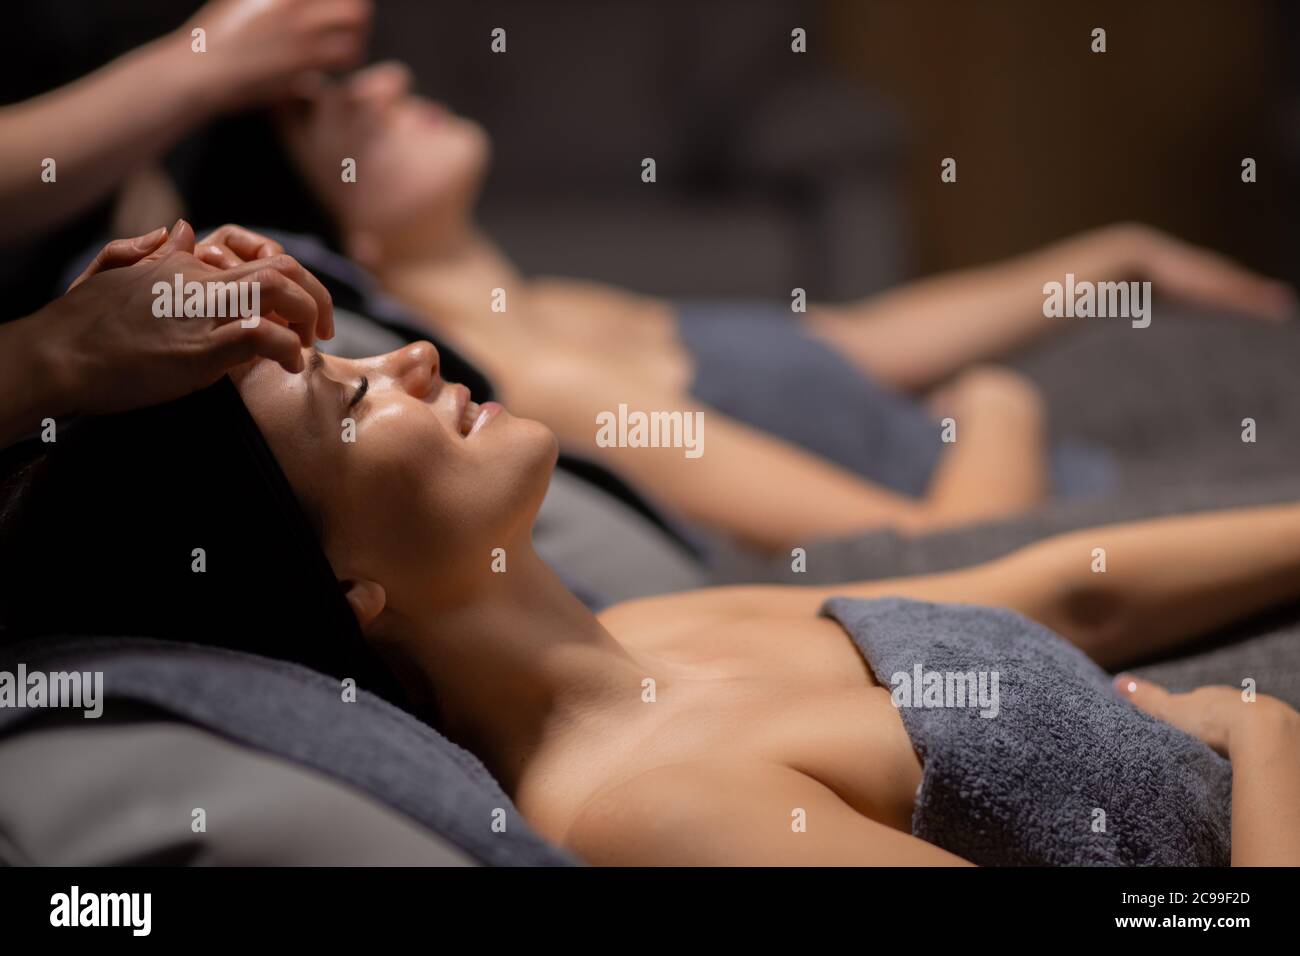 deux belles femmes caucasiennes reçoivent un massage facial, les jeunes femmes s'étendent sur le lit tandis que les masseurs touchent la peau de la tête et du visage, font le massage avec soin Banque D'Images